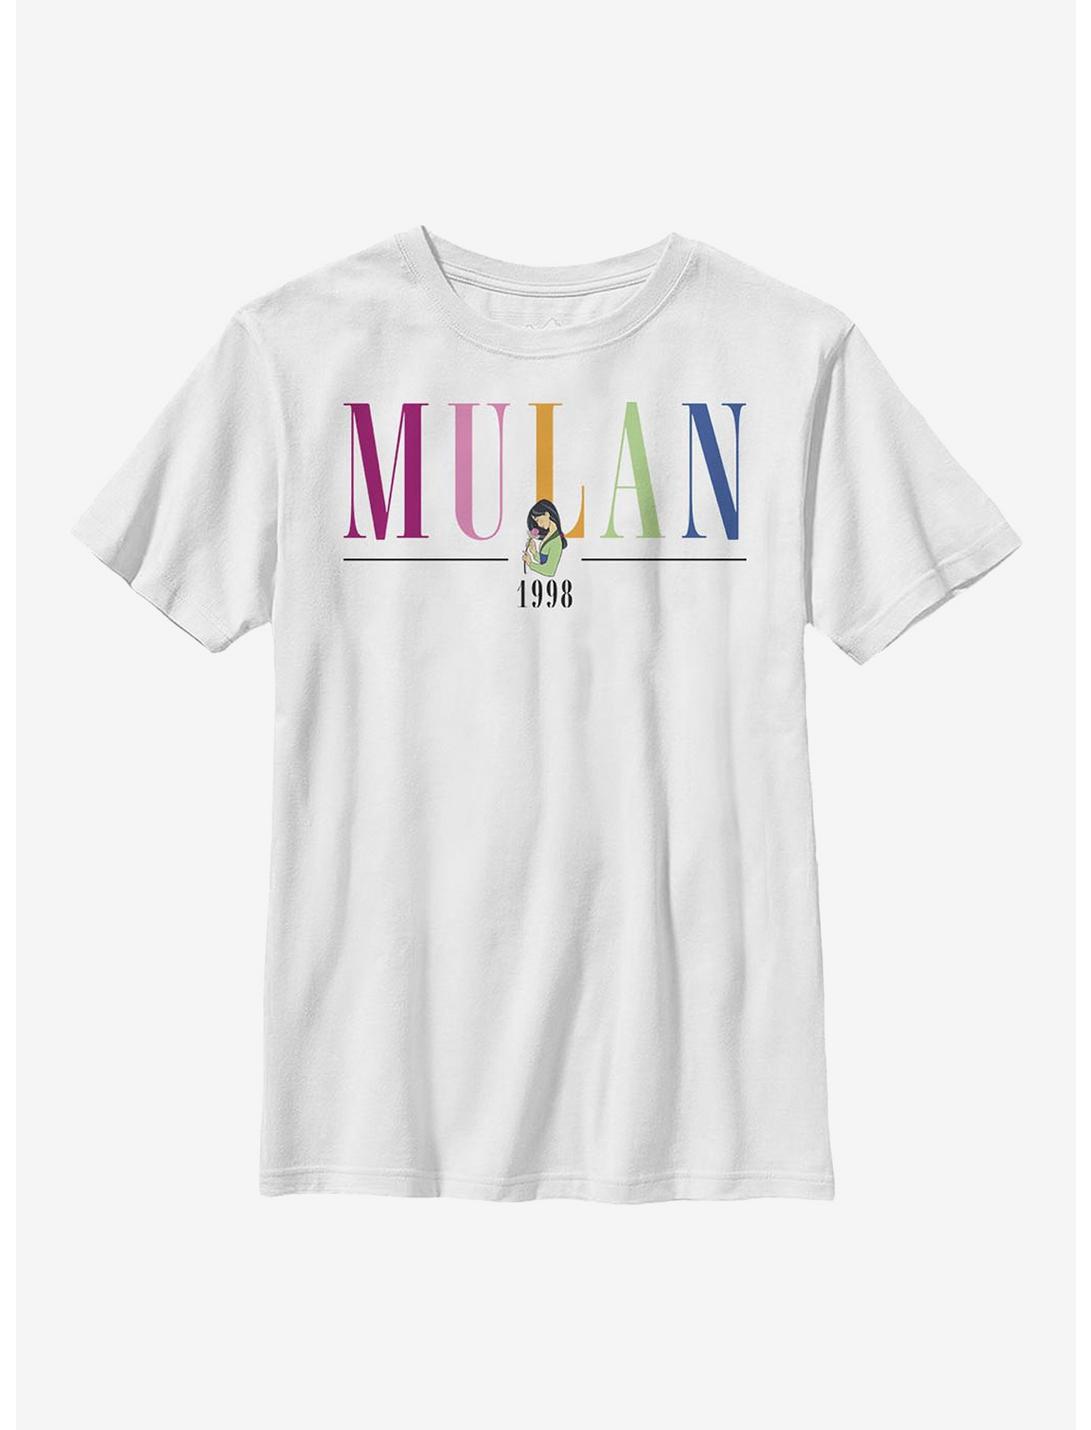 Disney Mulan Title Youth T-Shirt, WHITE, hi-res